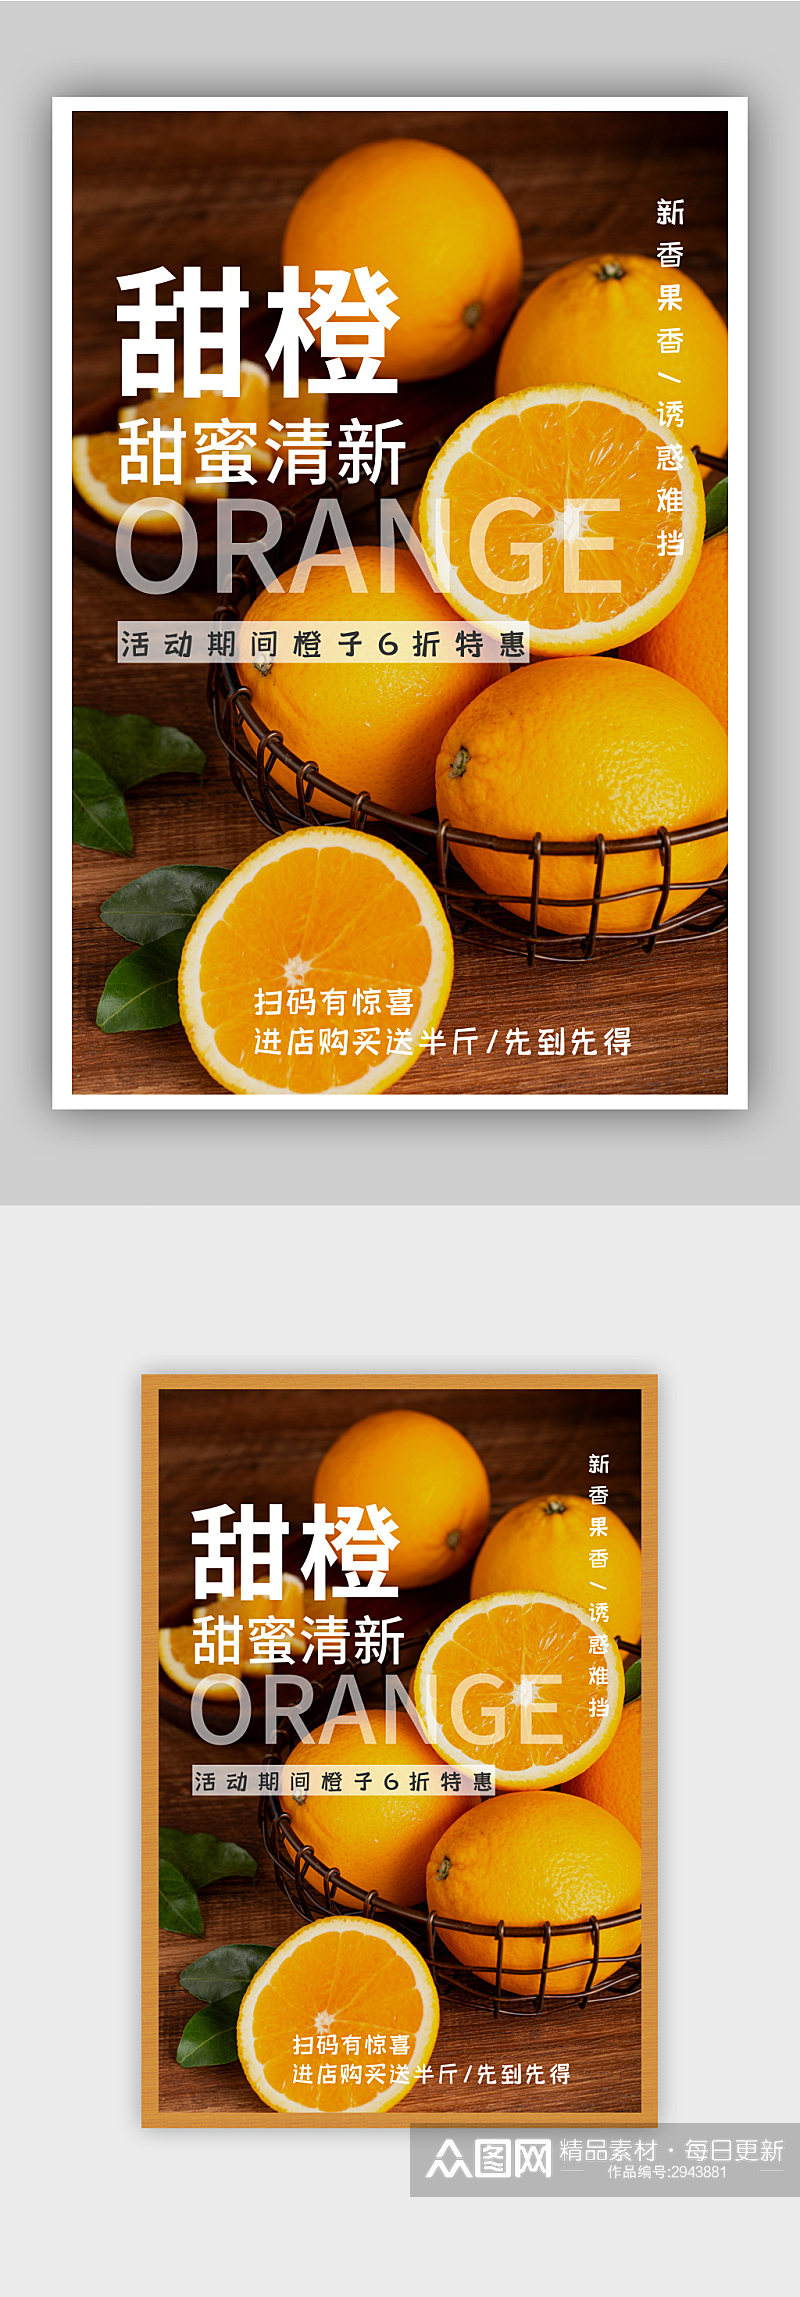 甜橙水果促销宣传海报素材